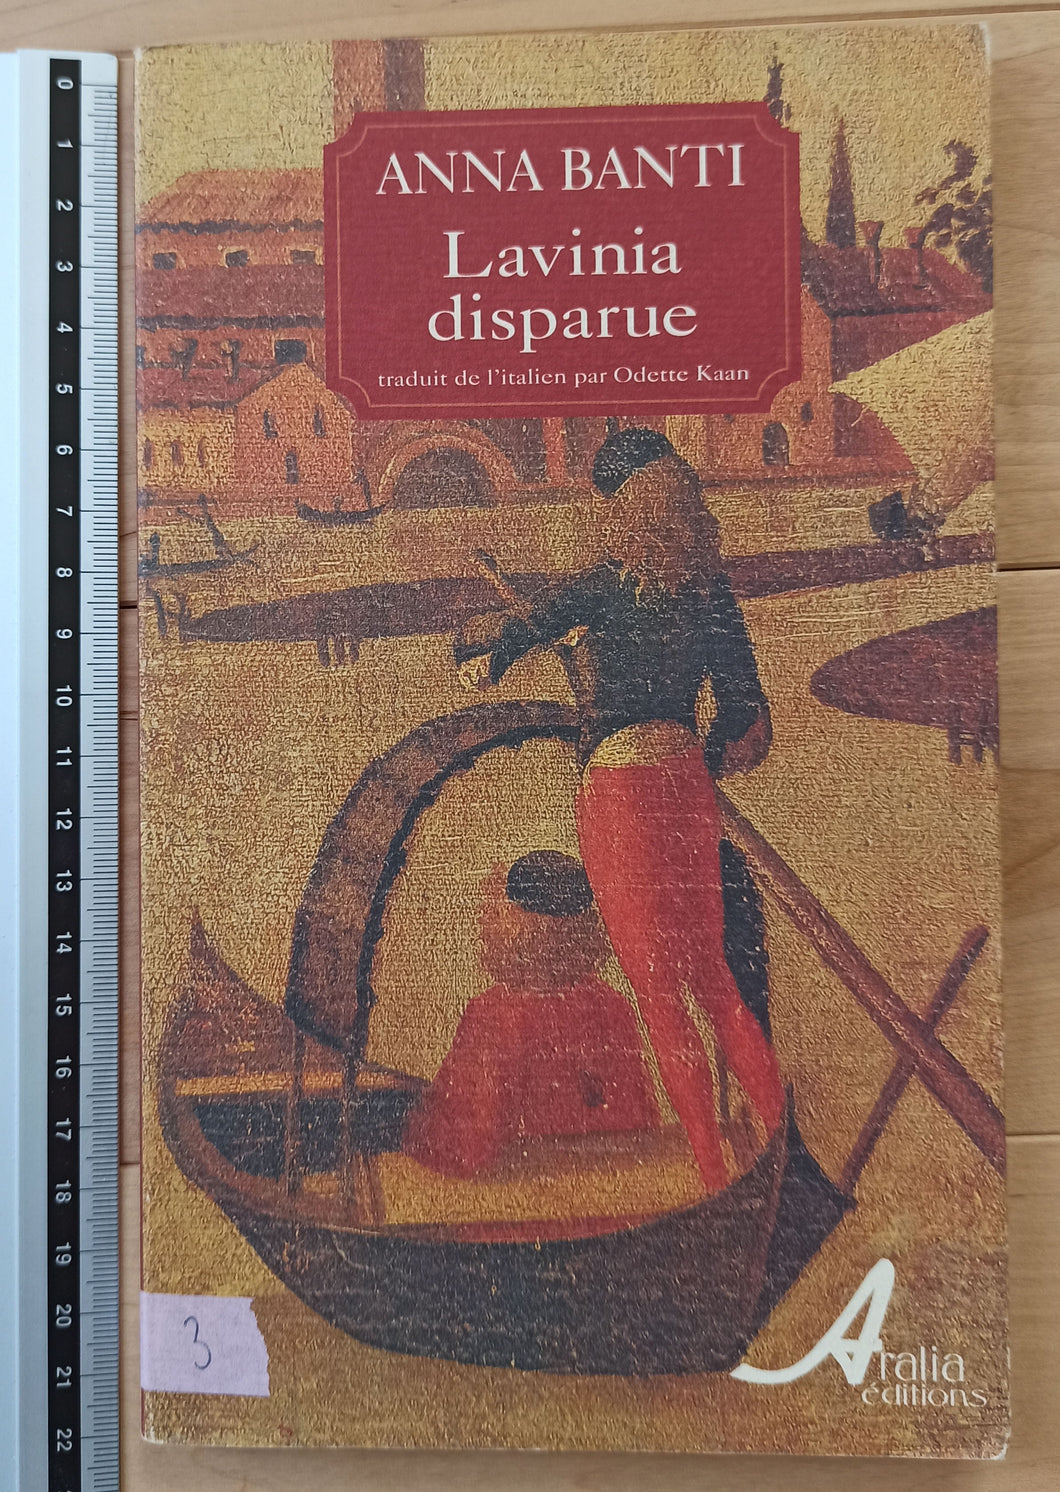 Lavinia Disparue : Anna Banti